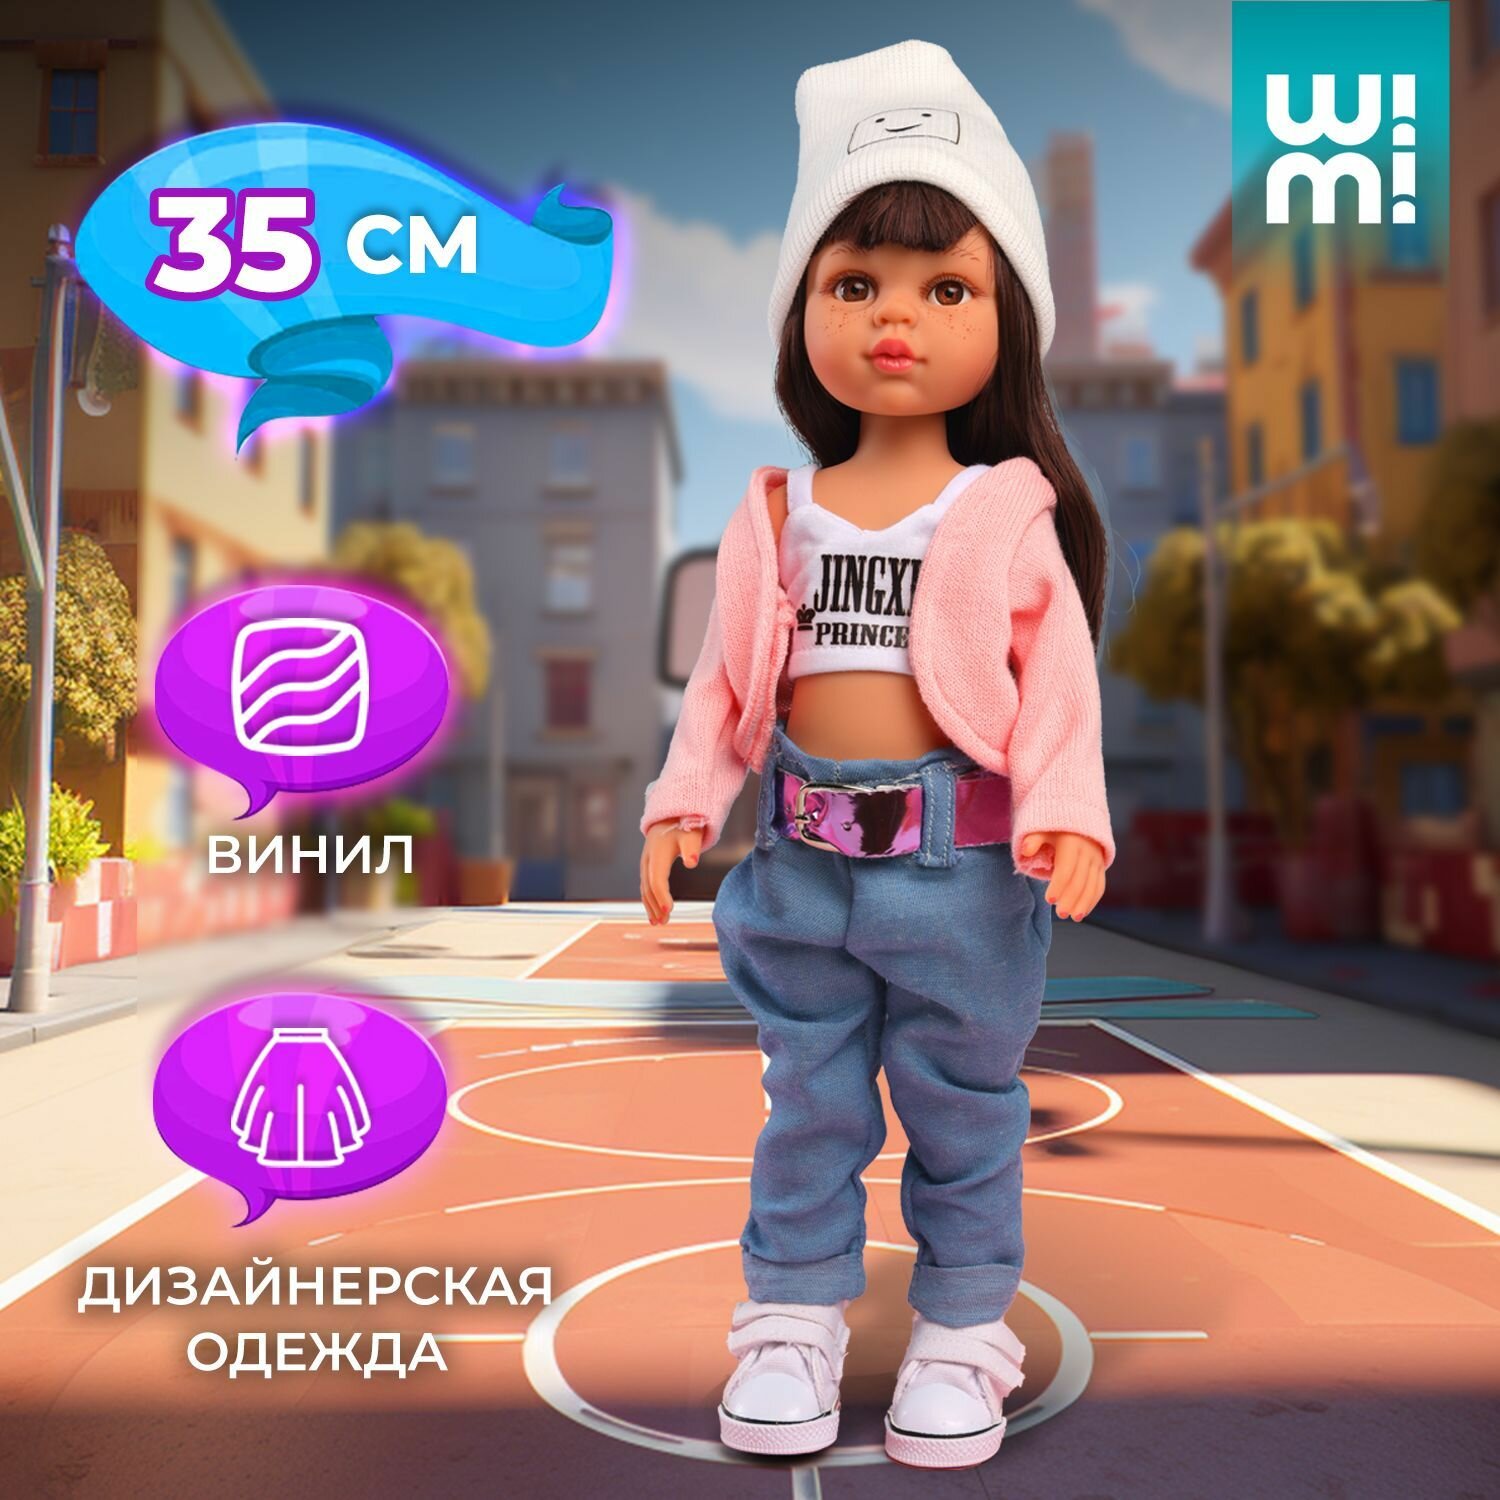 Коллекционная Кукла WiMi с веснушками и пушистыми ресницами, модница в спортивной одежде и кроссовках, кукла-модель с длинными волосами для девочек, 35 см